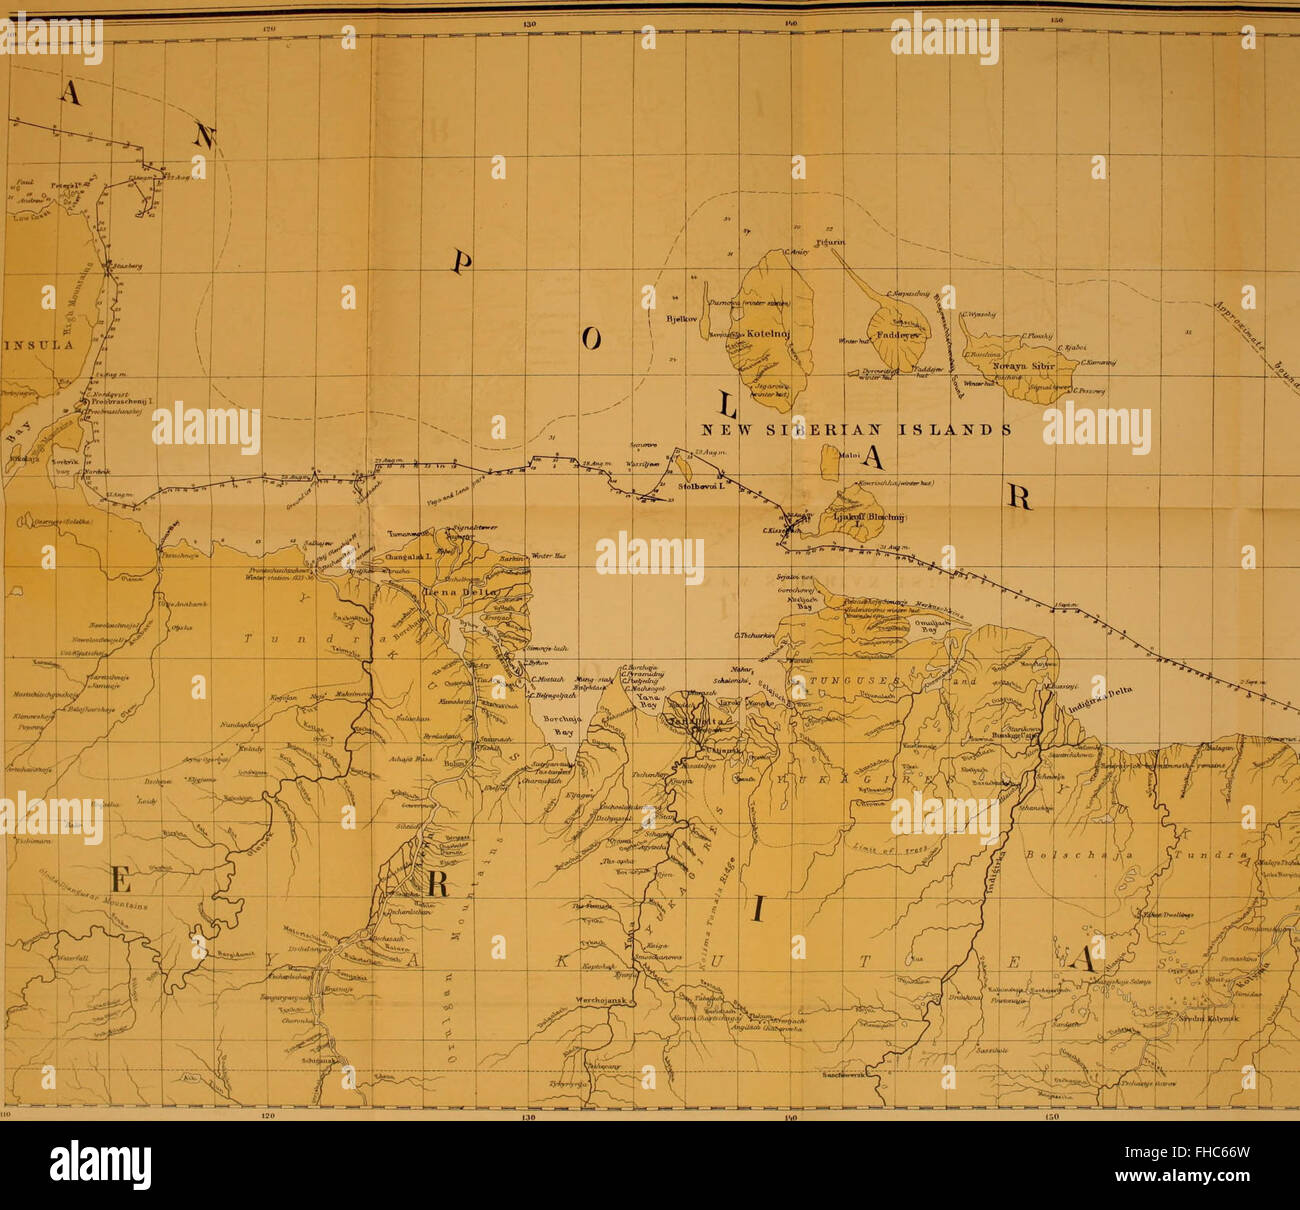 Il viaggio di Vega round Asia e Europa; con una revisione storica di precedenti viaggi lungo la costa nord del vecchio mondo (1882) Foto Stock